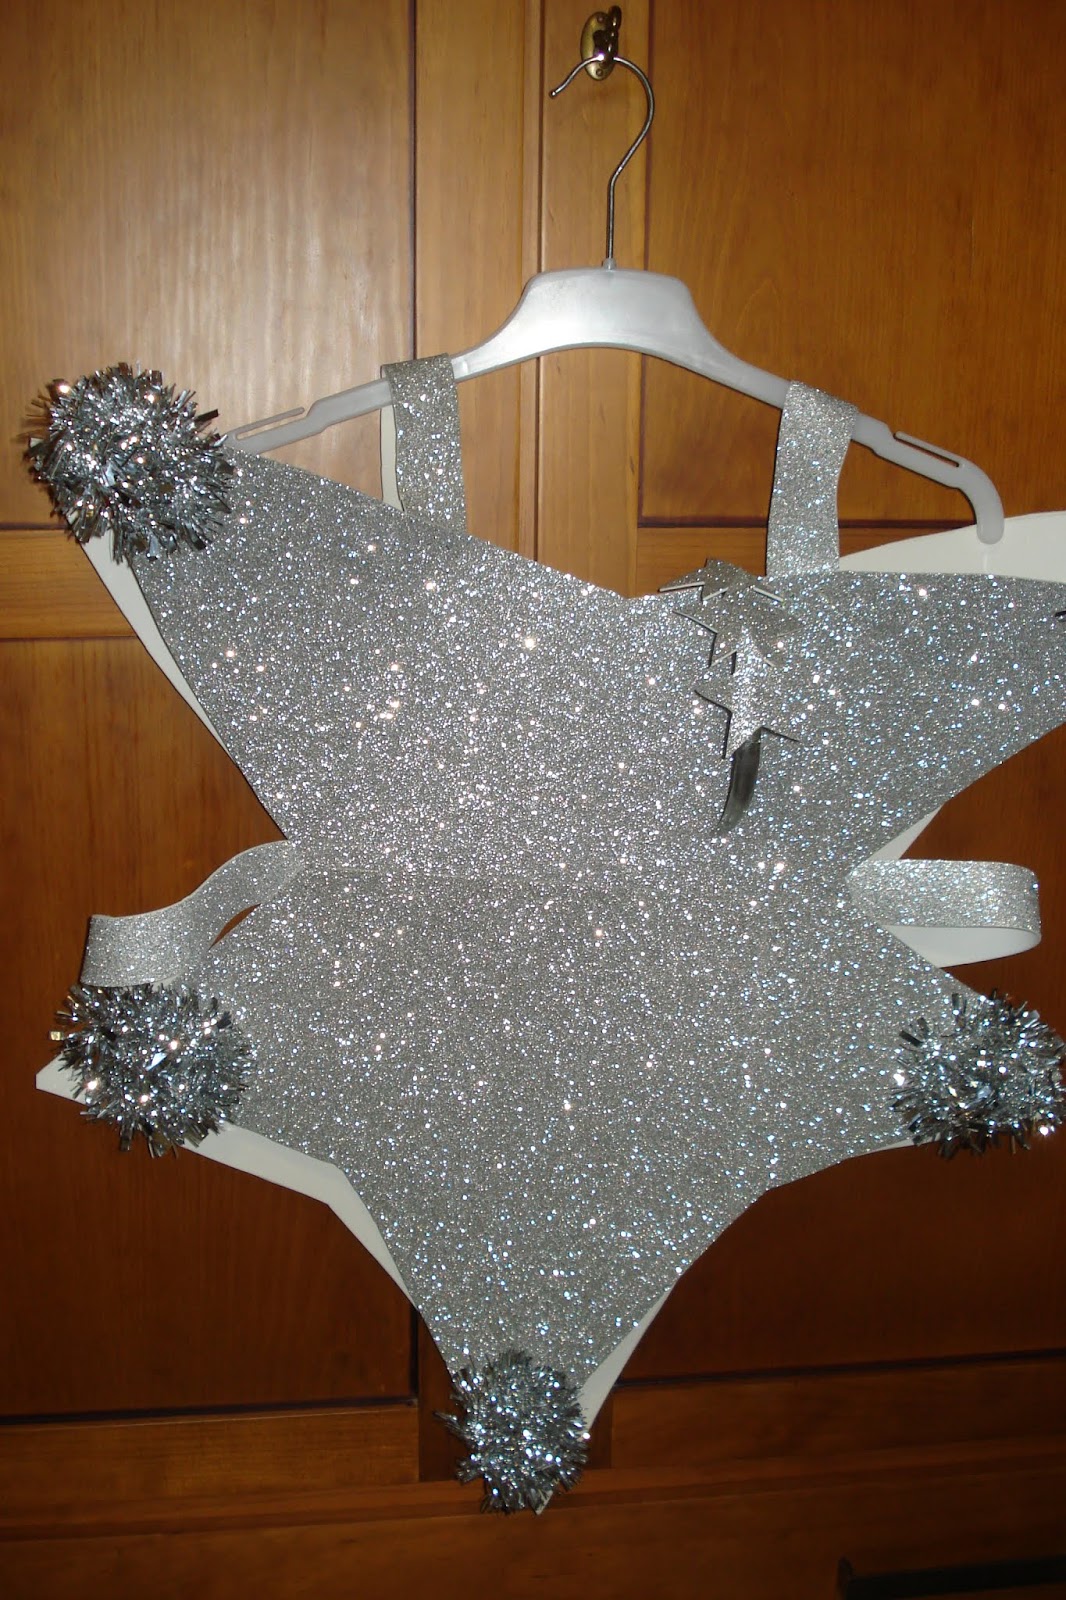 : Disfraz de estrella con goma eva espumillón - Star Costume with eva foam and tinsel